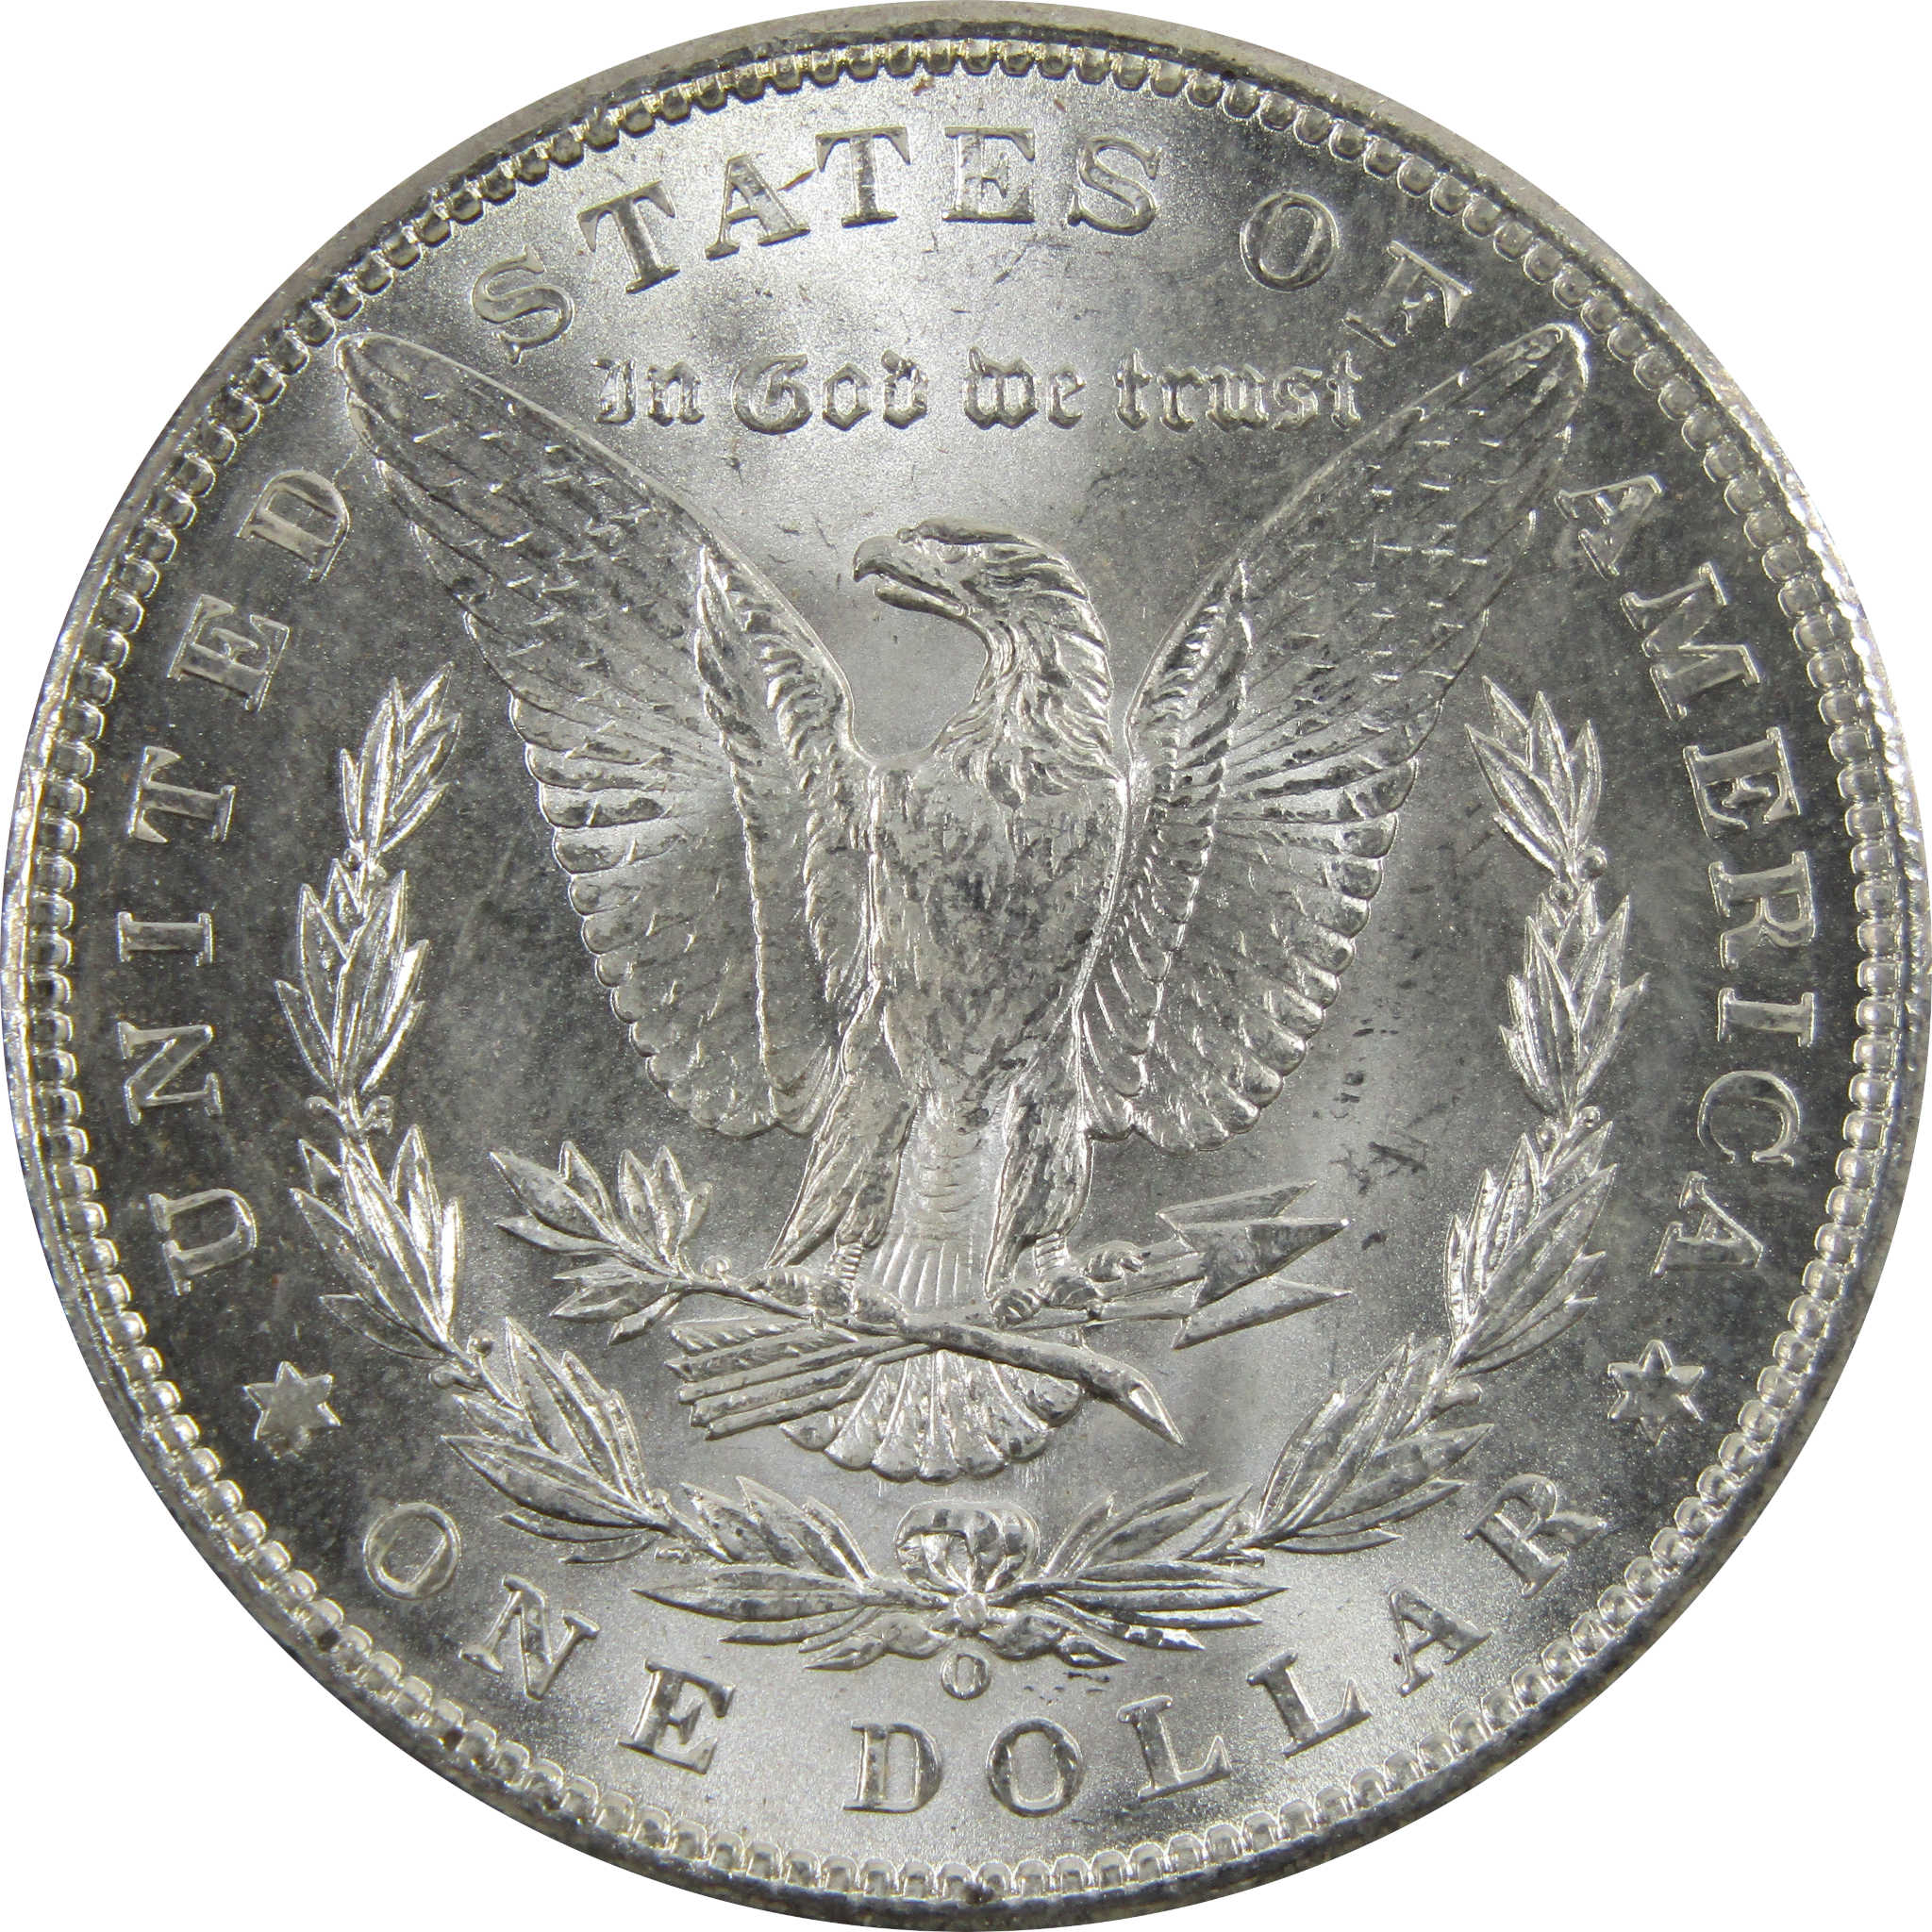 1898 O Morgan Dollar BU Uncirculated 90% Silver $1 Coin SKU:I5253 - Morgan coin - Morgan silver dollar - Morgan silver dollar for sale - Profile Coins &amp; Collectibles